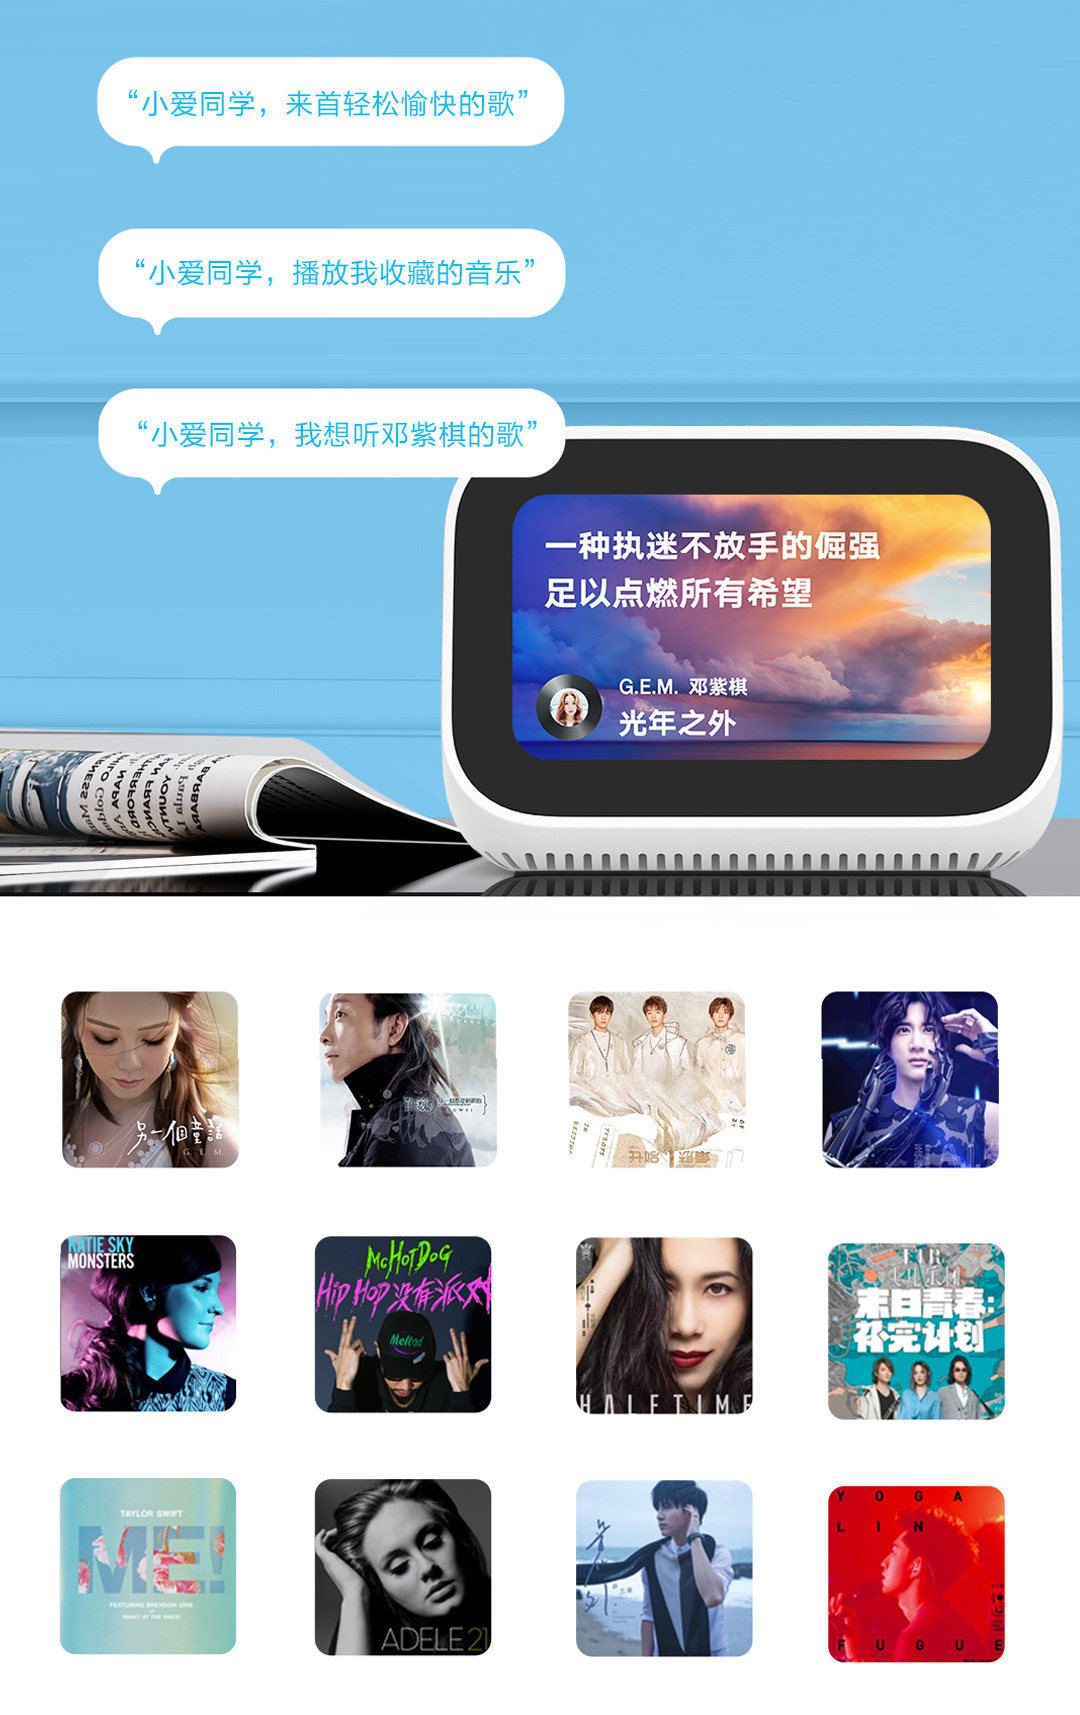 Xiaomi Mi XiaoAi Touchscreen Speaker